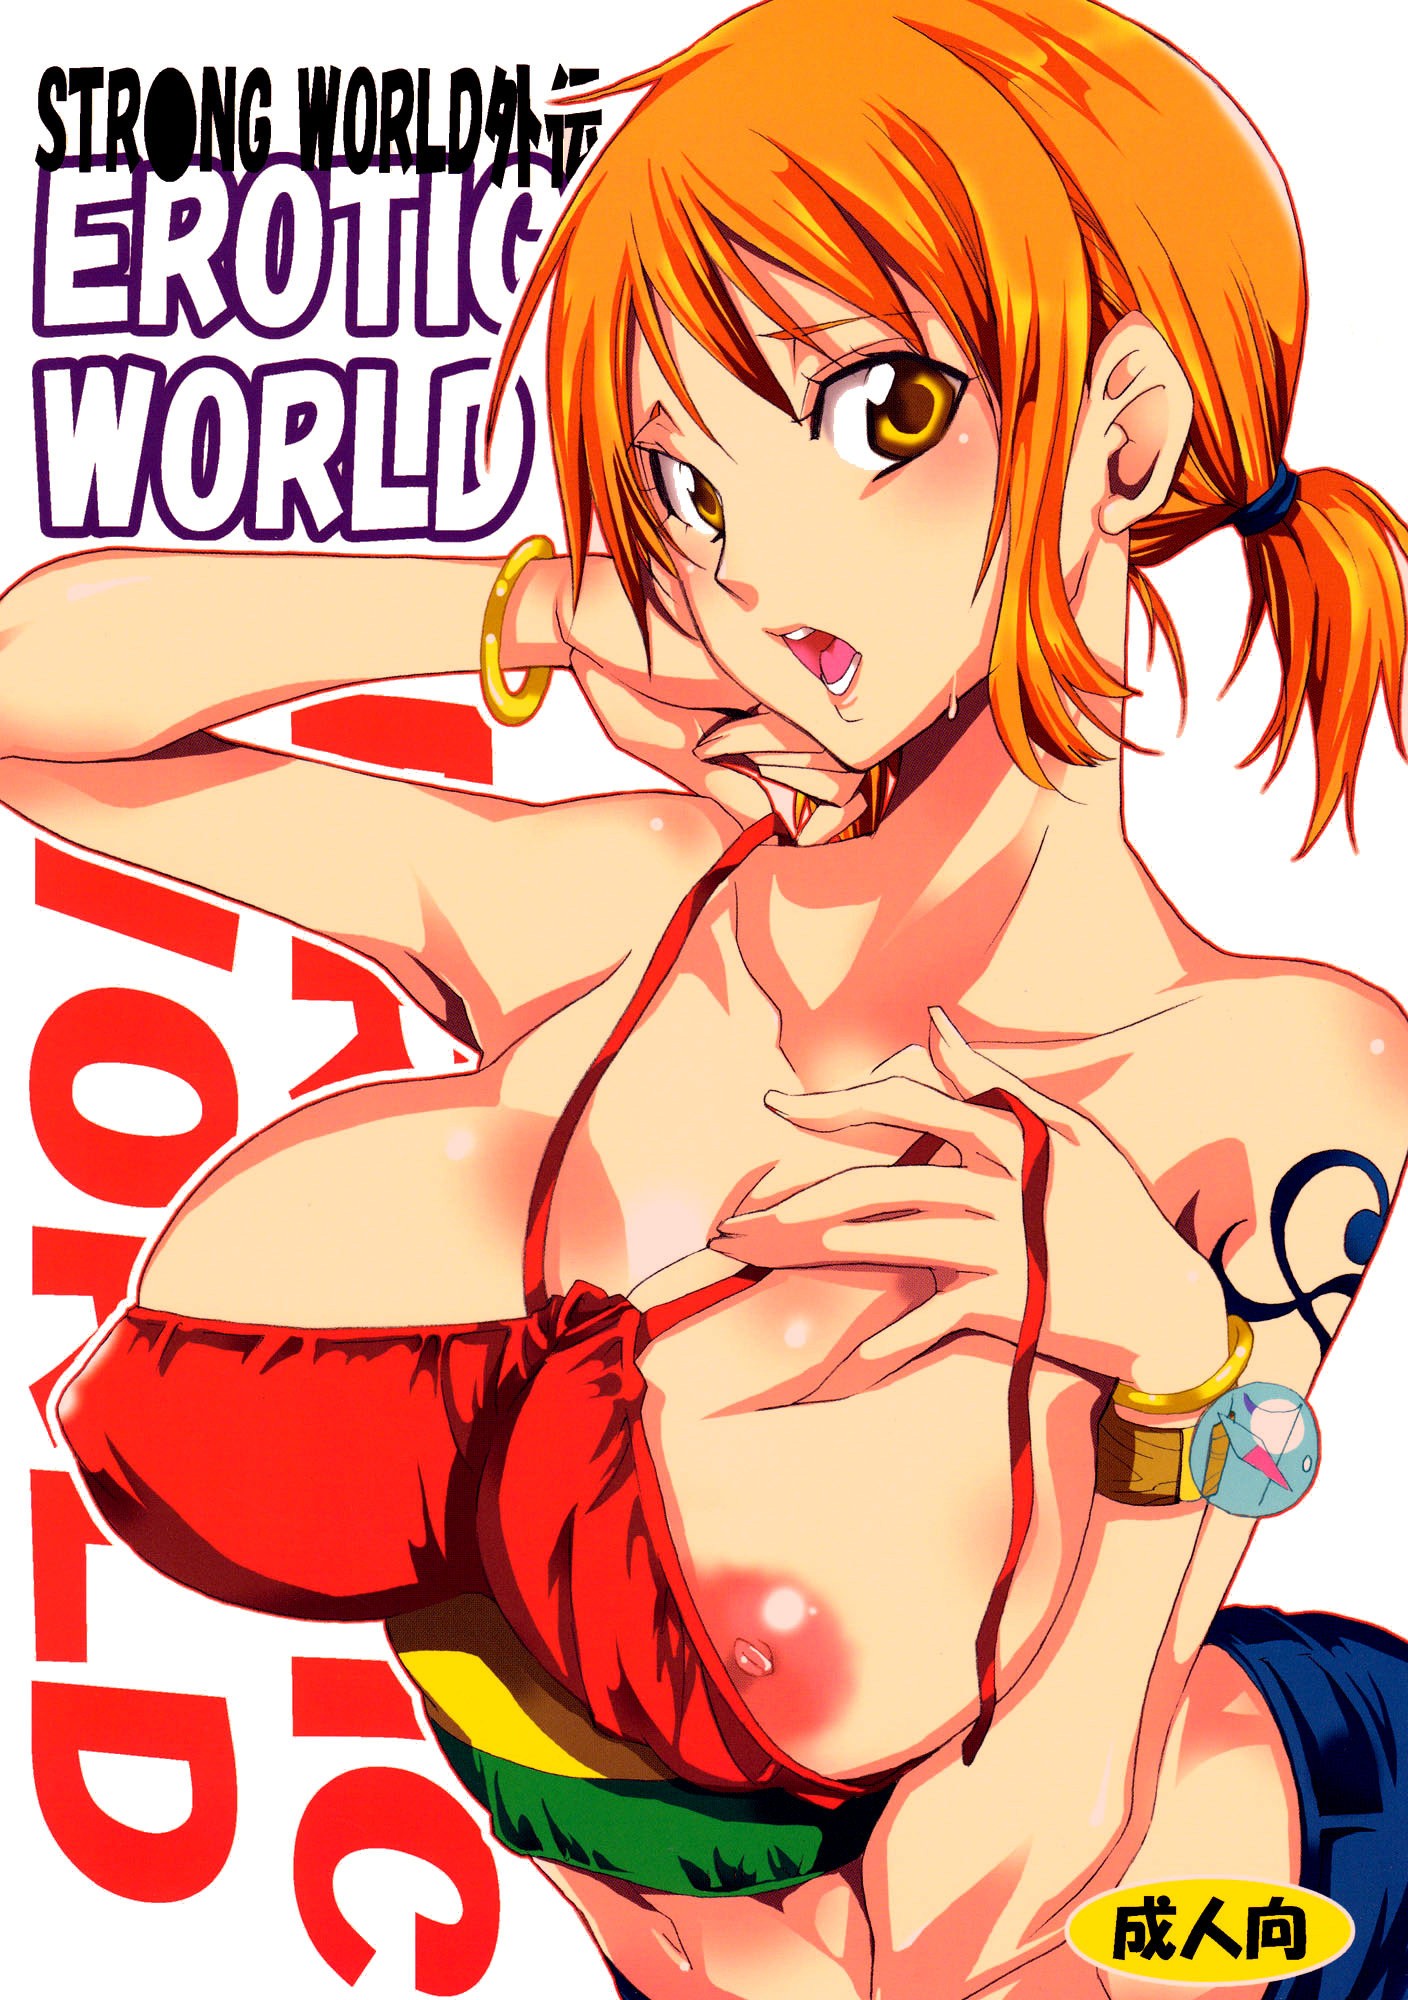 Erotic World porn comic picture 1